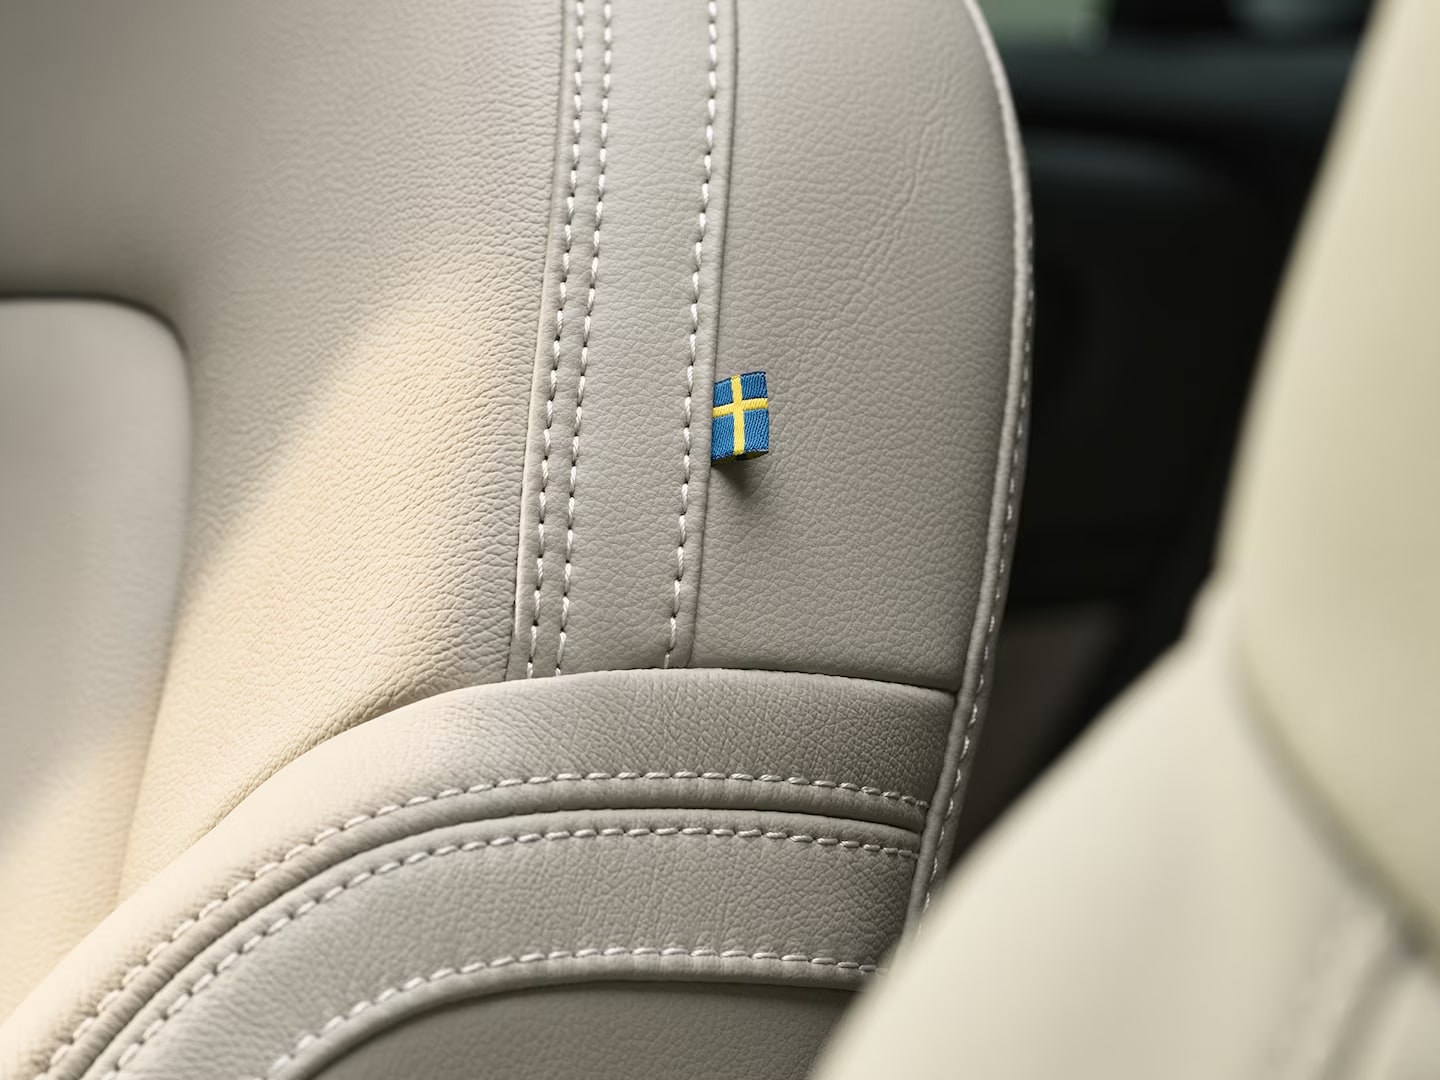 Detalle de las costuras del asiento del copiloto en cuero del semihíbrido Volvo XC40 con una pequeña bandera sueca.